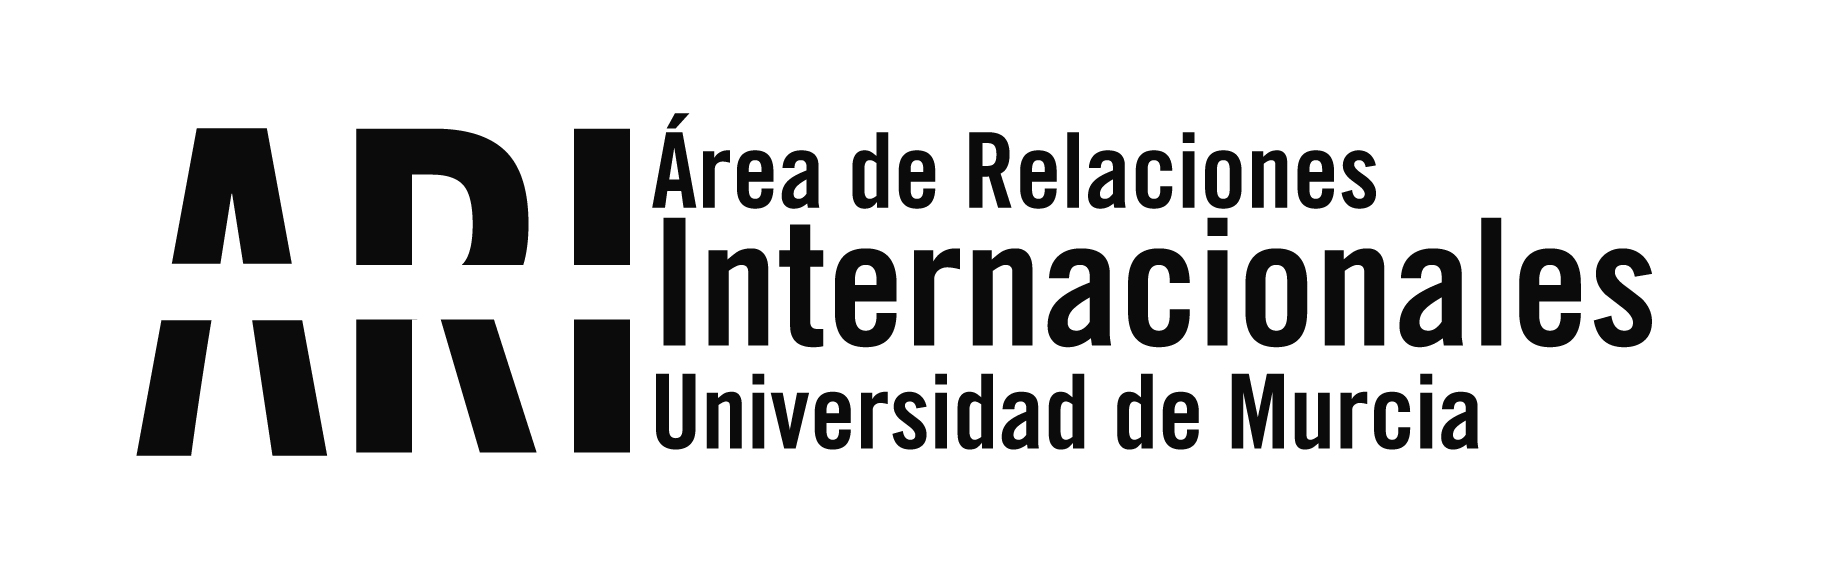 La Universidad de Murcia acoge a los representantes del proyecto Erasmus+ "HERMES" para trabajar en el diseño de módulos de aprendizaje on-line - Área de Relaciones Internacionales